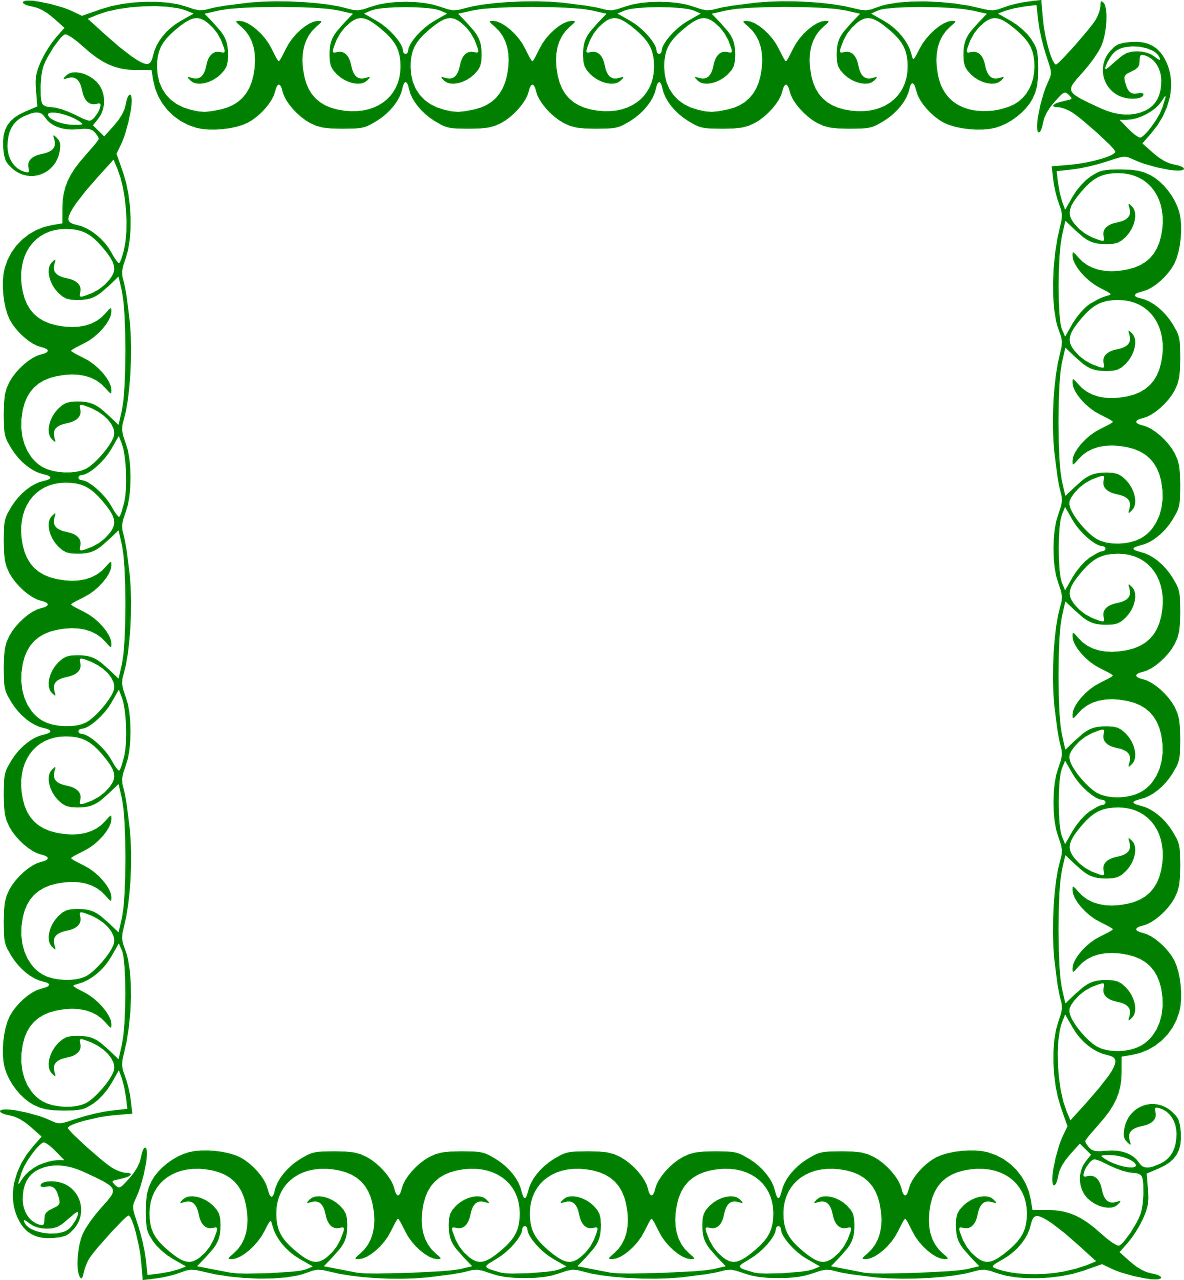 Border Green Frame PNG Transparent Image